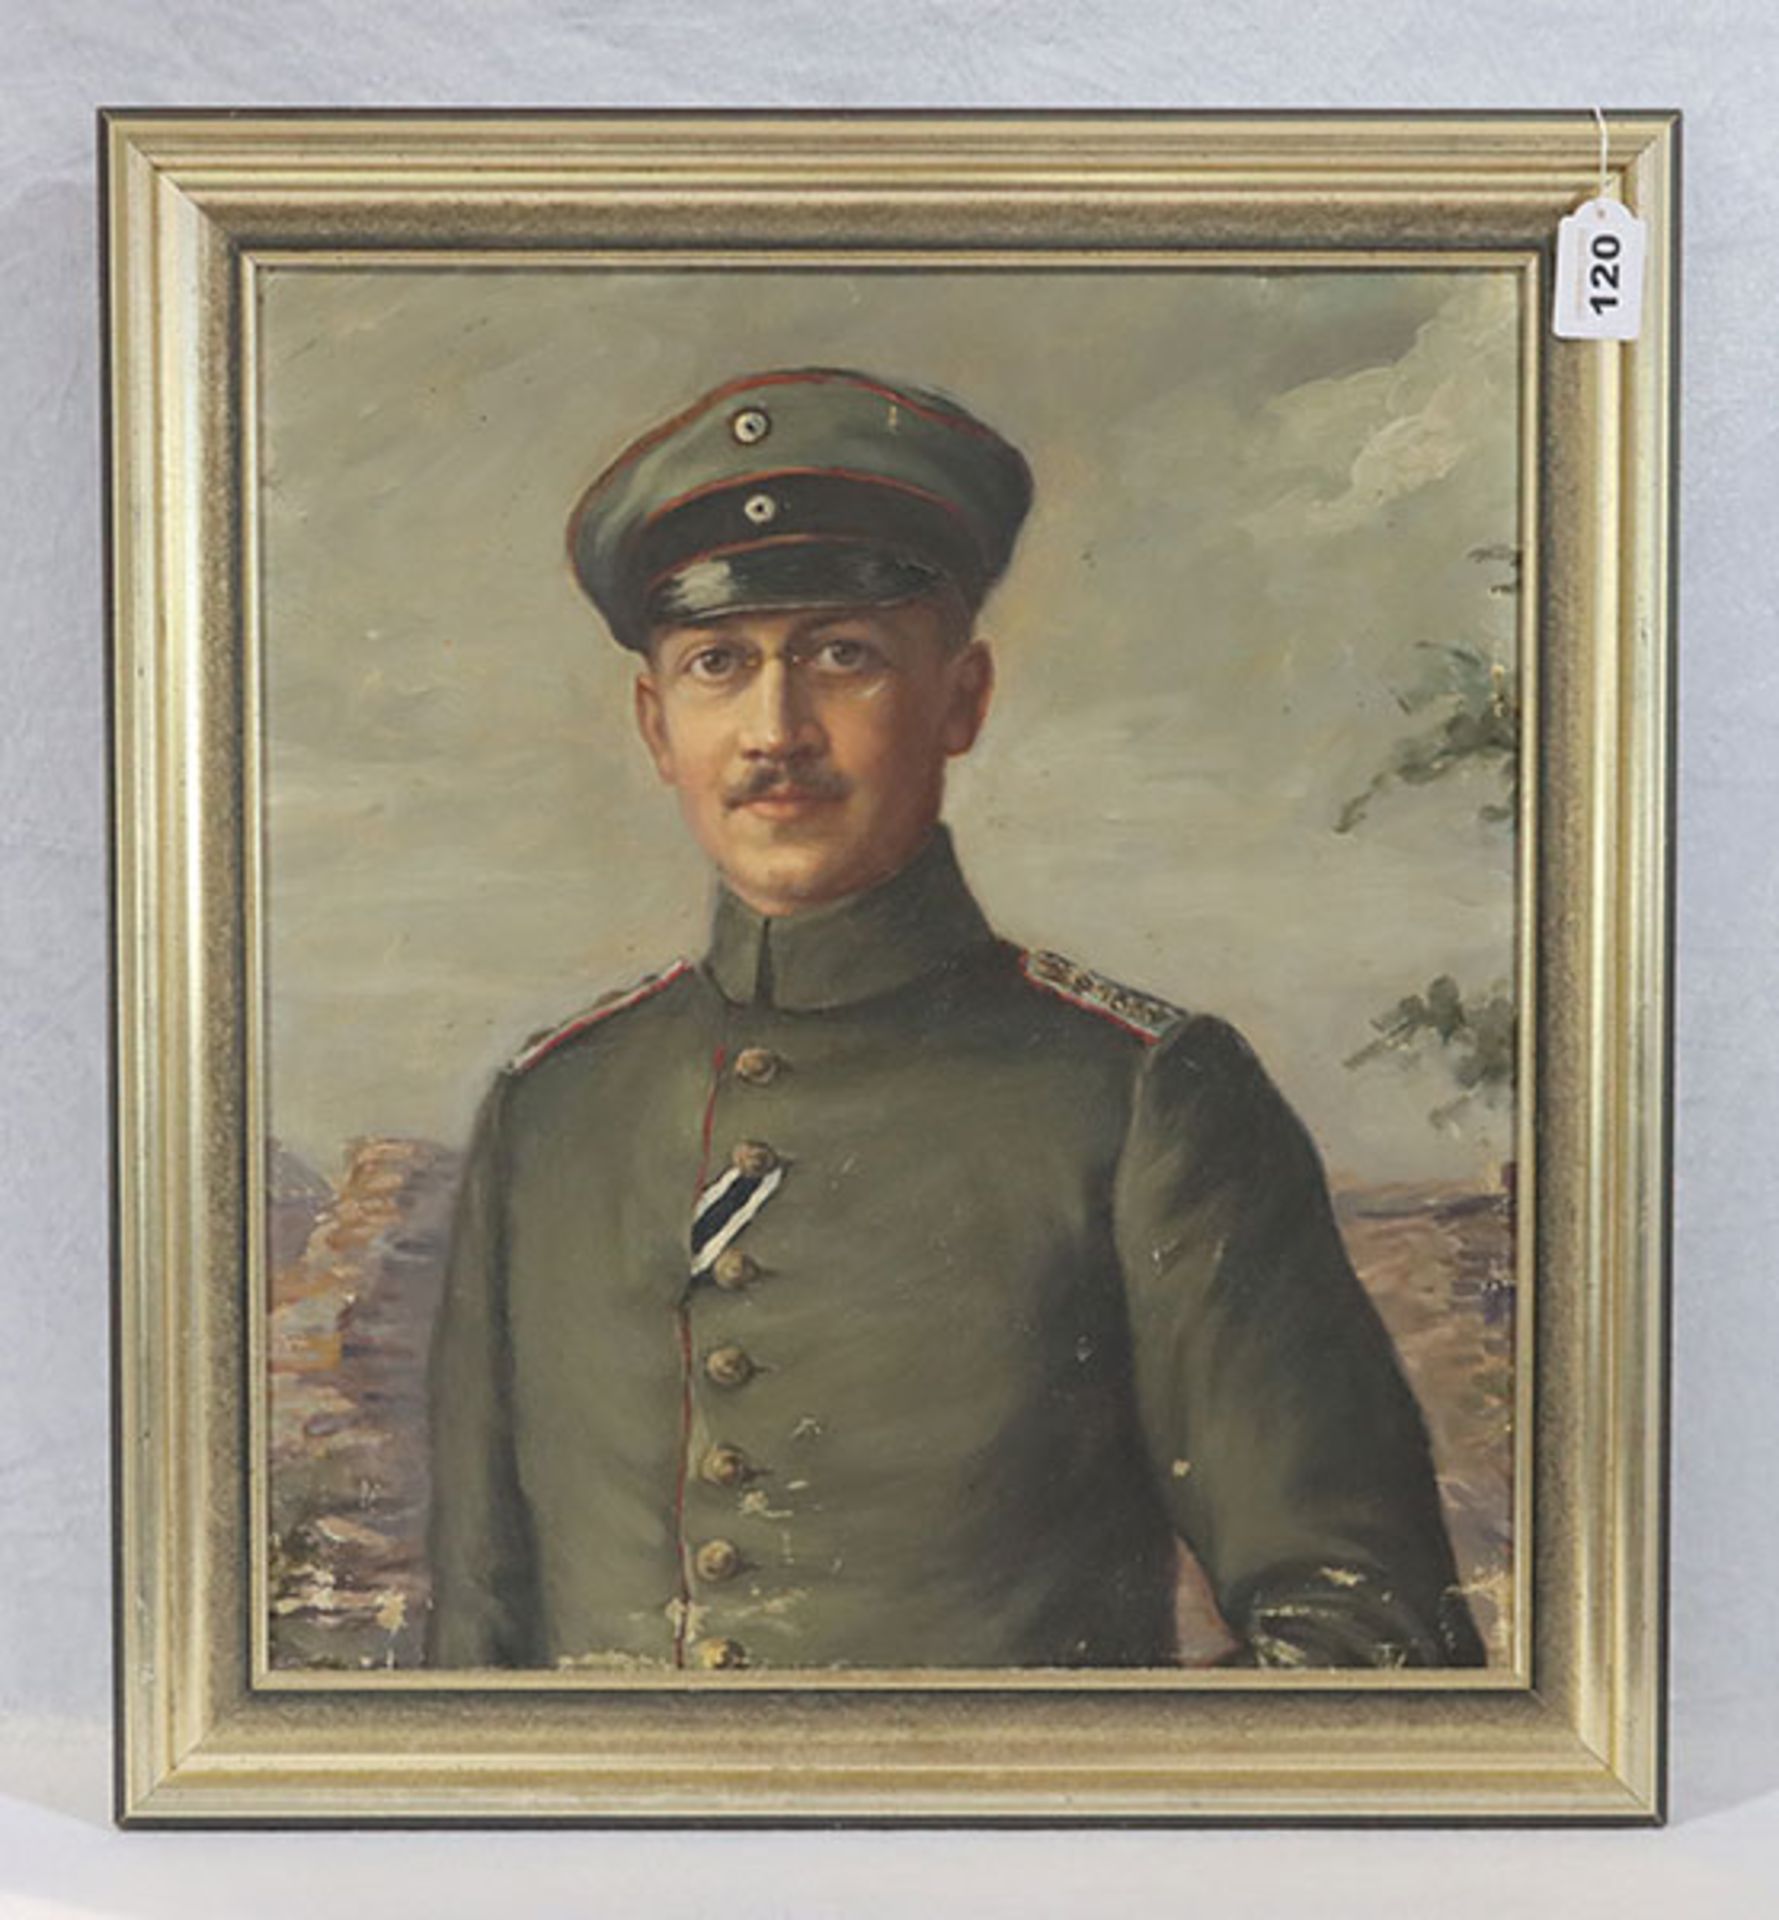 Gemälde ÖL/LW 'Offizier aus dem 1. Weltkrieg', LW wurde mehrmals gefaltet und gerahmt, Rahmen